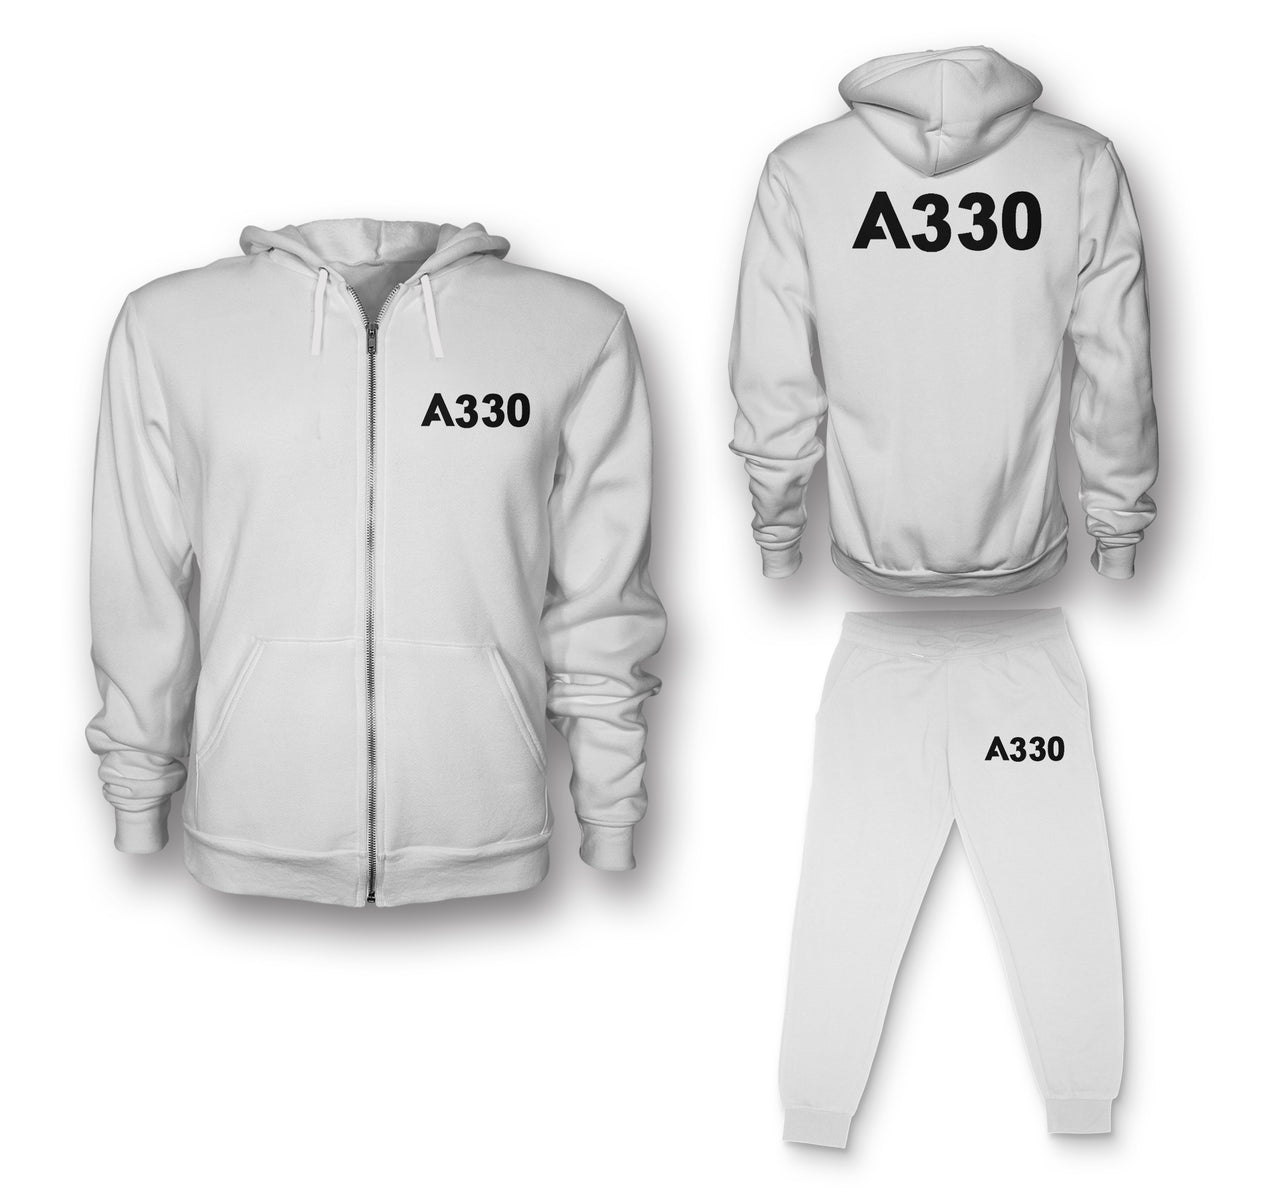 A330 Flat Text Designed Zipped Hoodies & Sweatpants Set